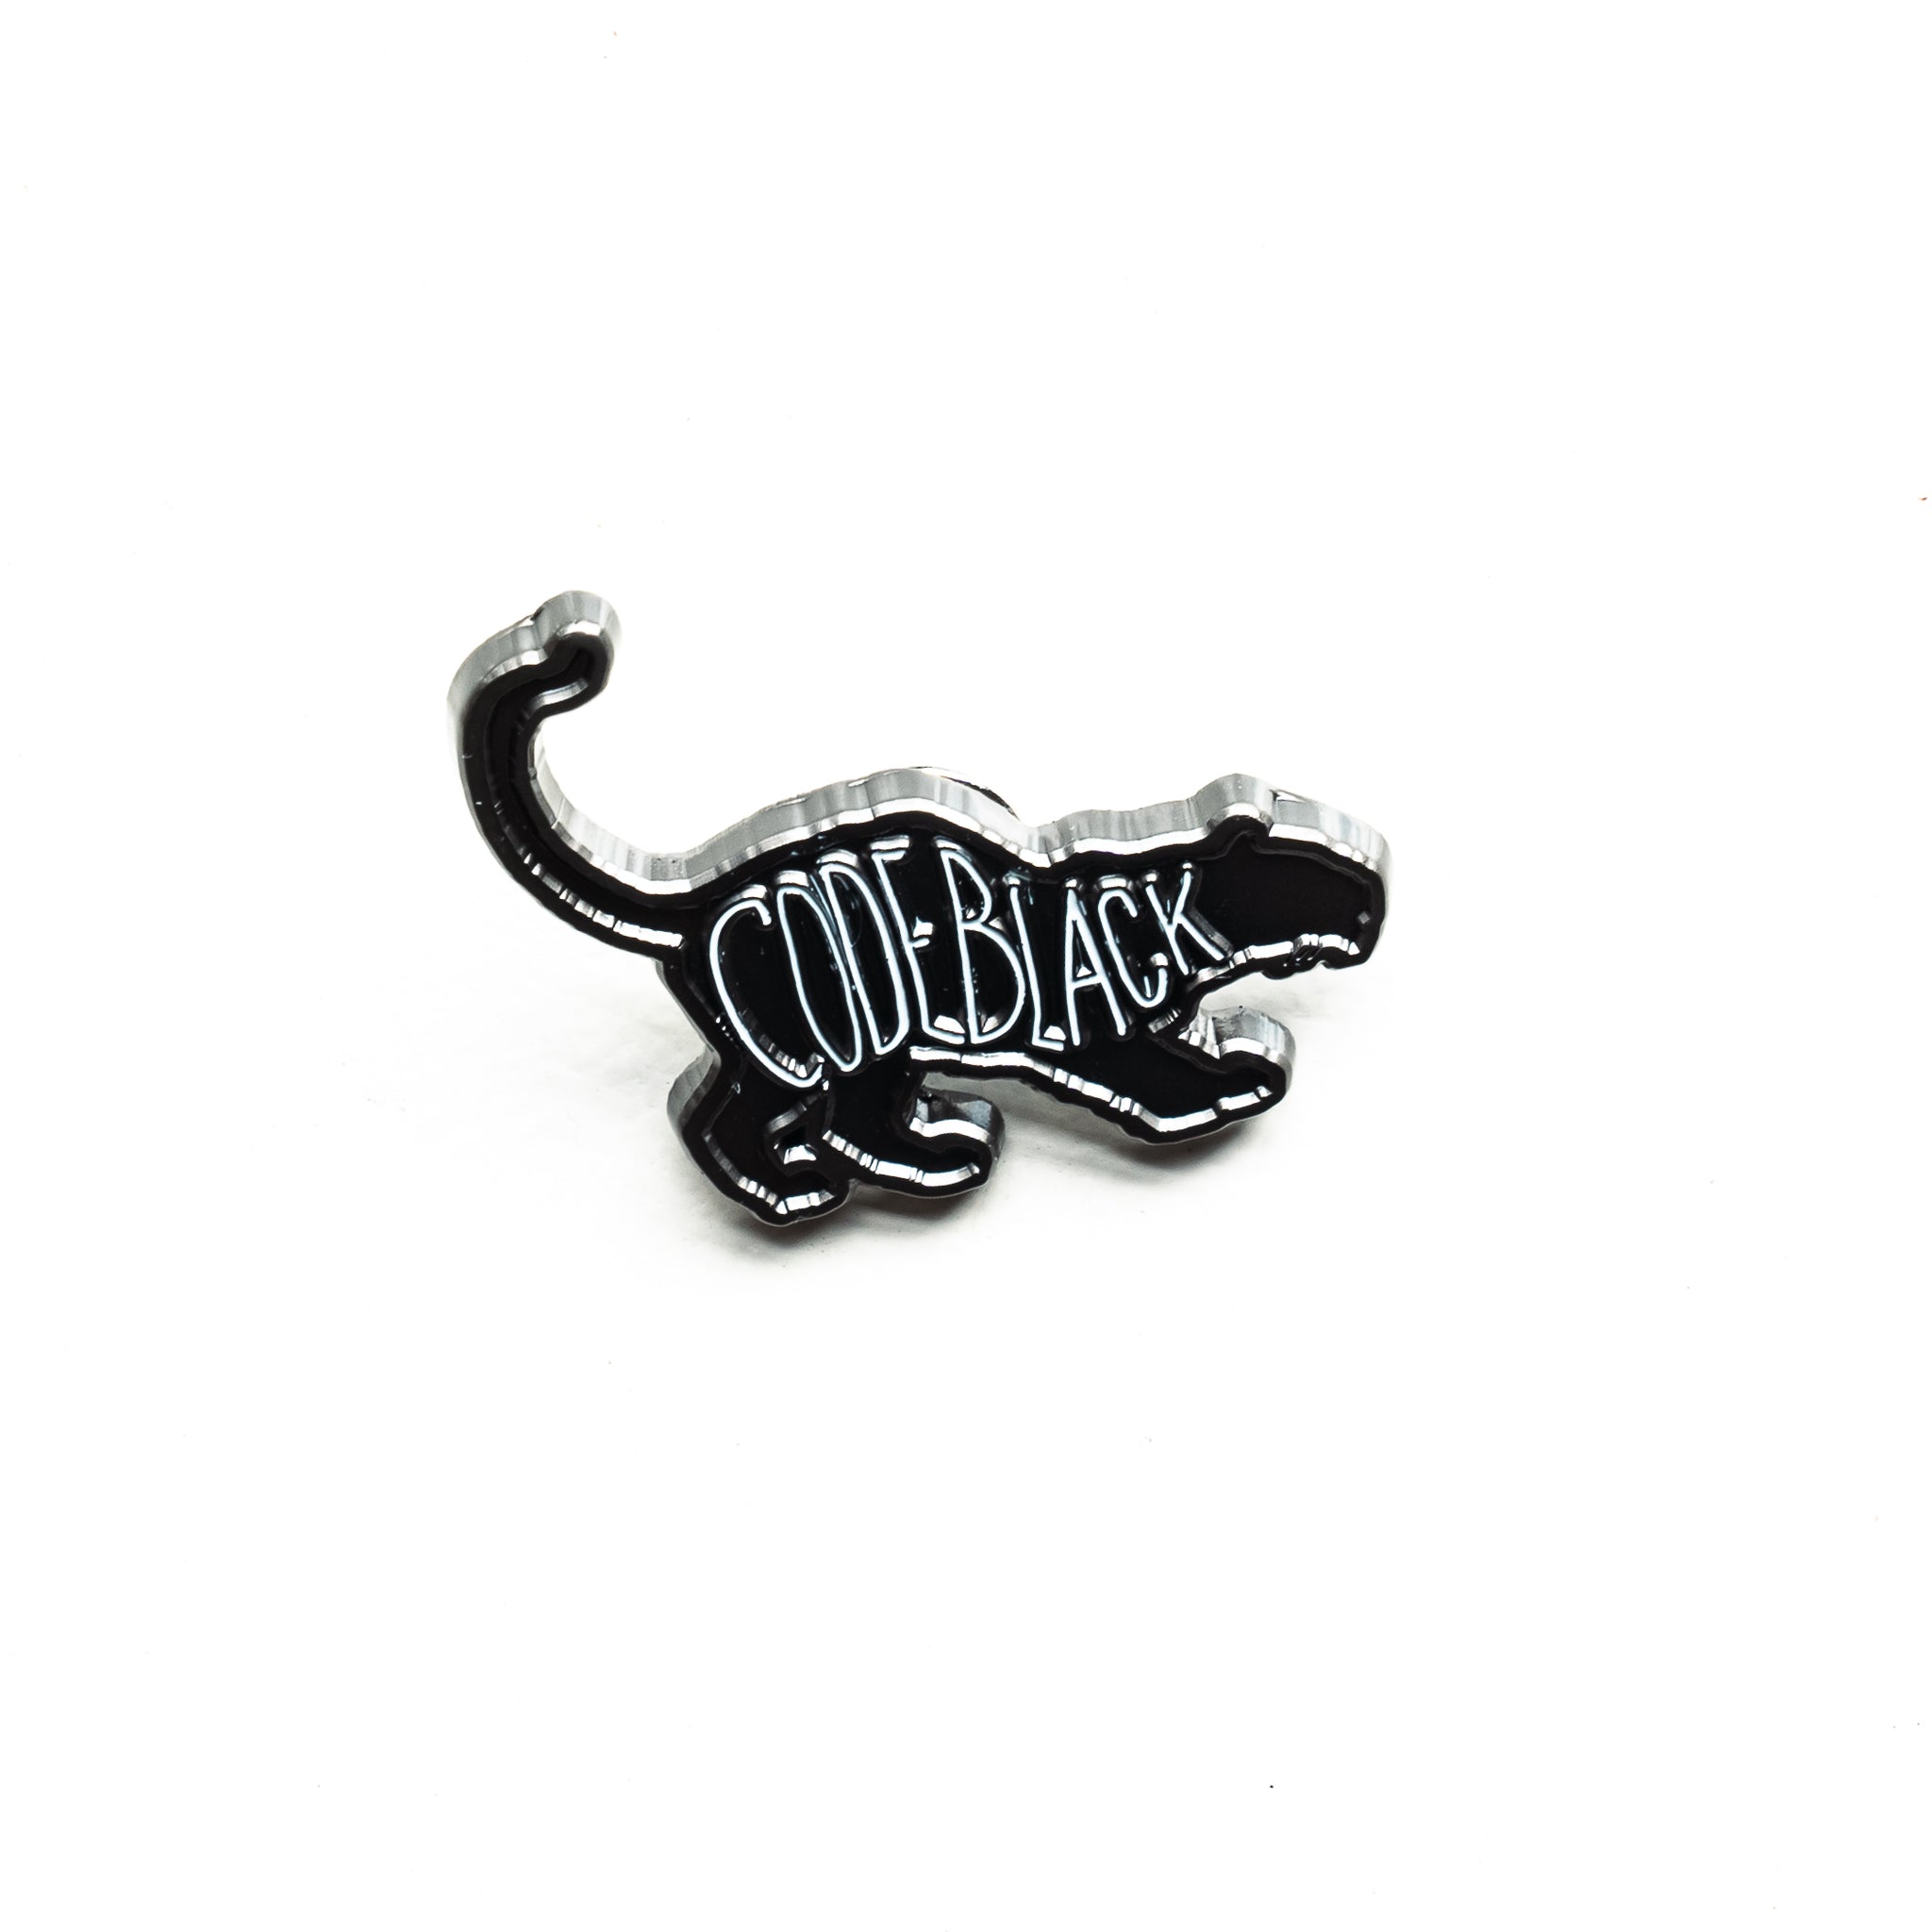 'Code Black Cat' Lapel Pin